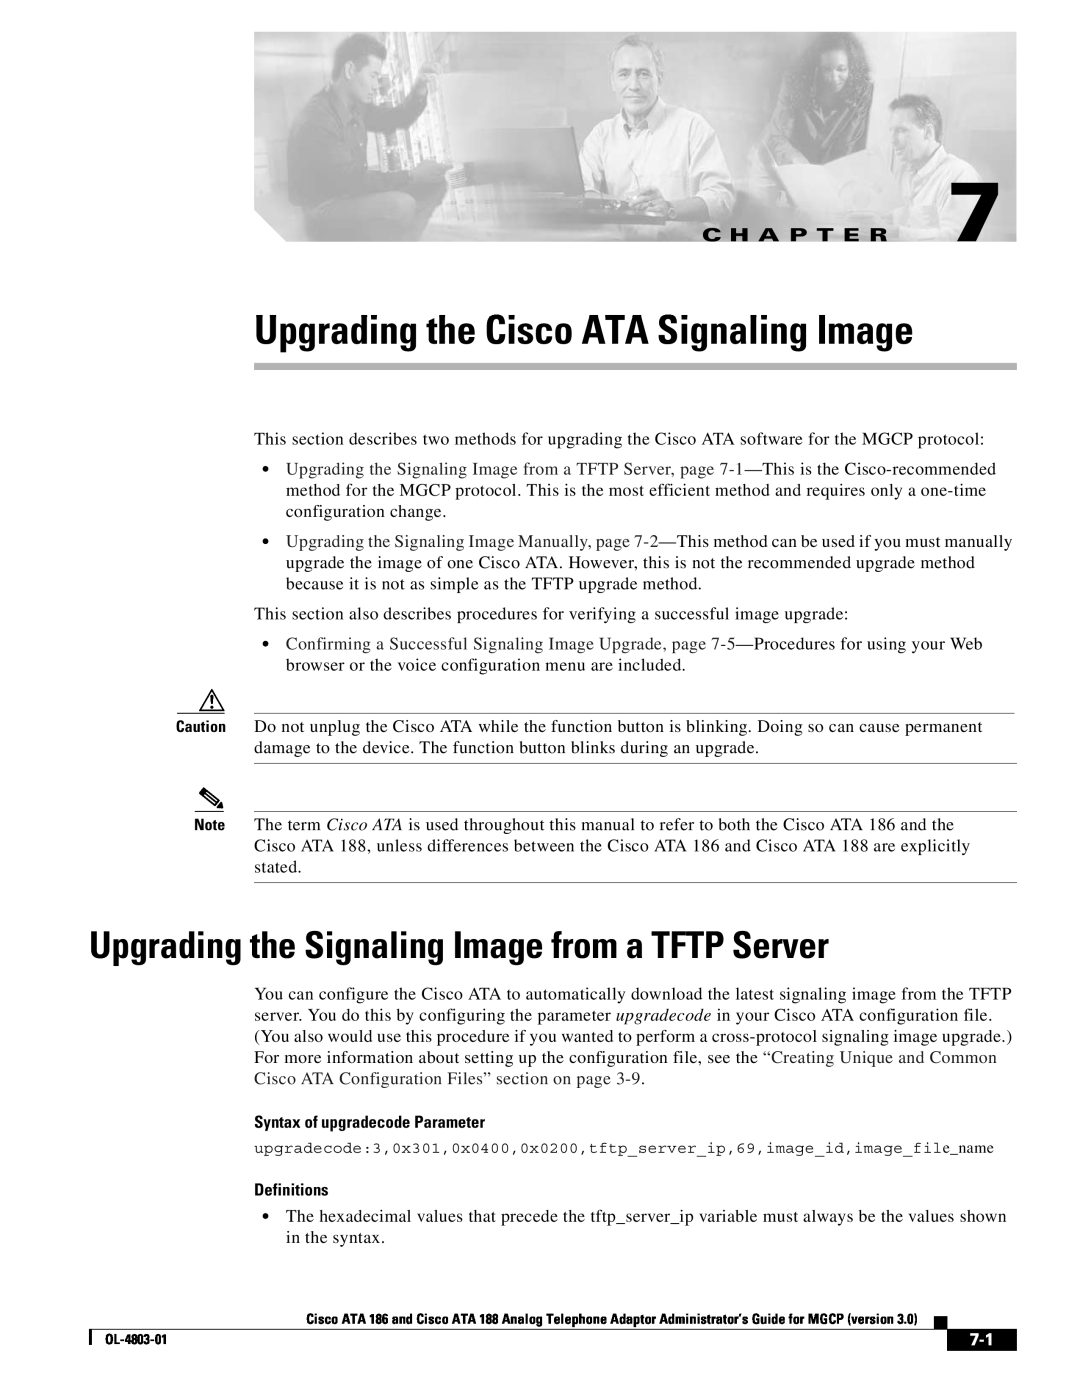 Cisco Systems ATA 188, ATA 186 Upgrading the Cisco ATA Signaling Image, Upgrading the Signaling Image from a TFTP Server 